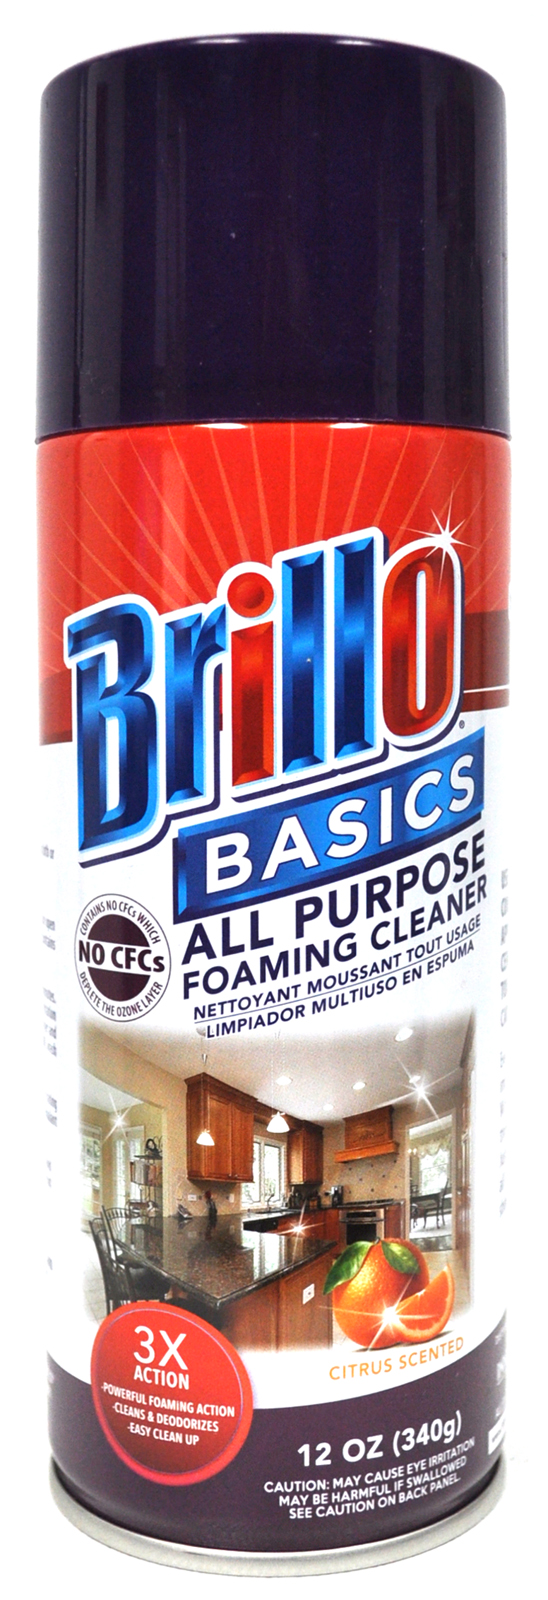 Brillo Basics All Purpose Foaming Cleaner 12 Oz